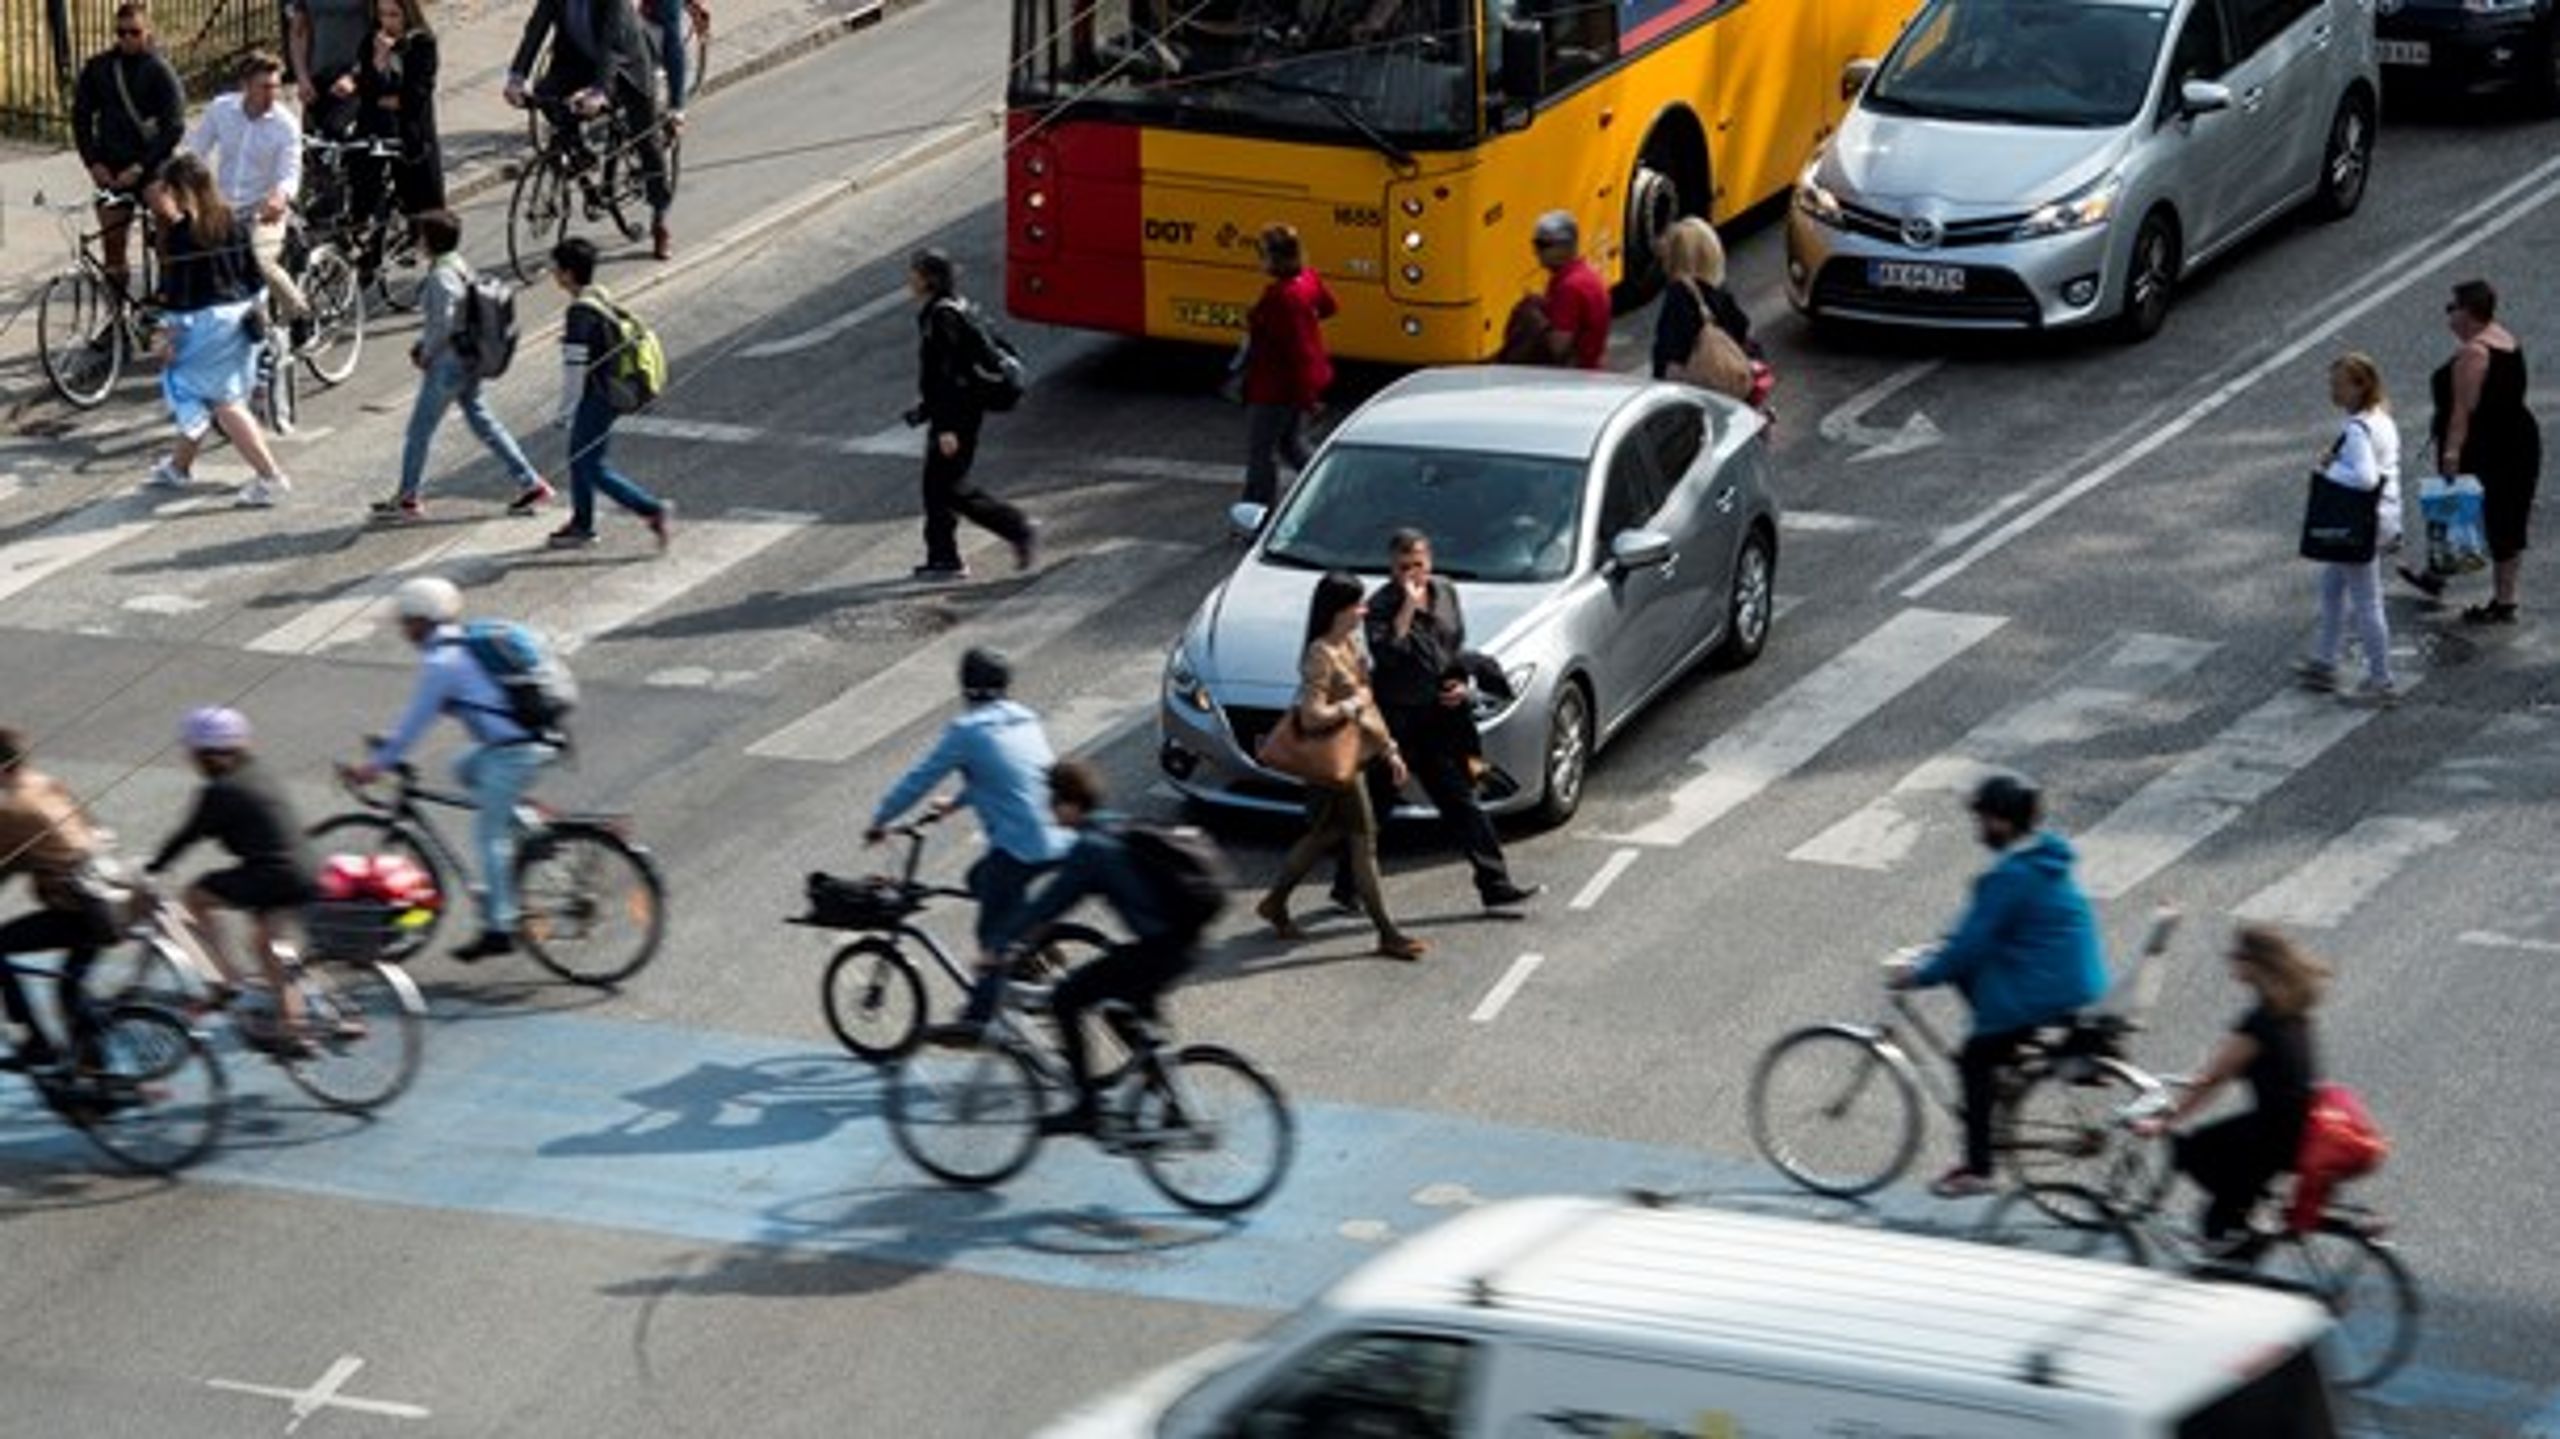 Københavns veje skal genoprettes, men kun til oprindelig standard. Der kommer derfor ikke&nbsp;bredere cykelstier,&nbsp;farthindringer eller flere træer,&nbsp;skriver&nbsp;Rasmus Steenberger (SF).